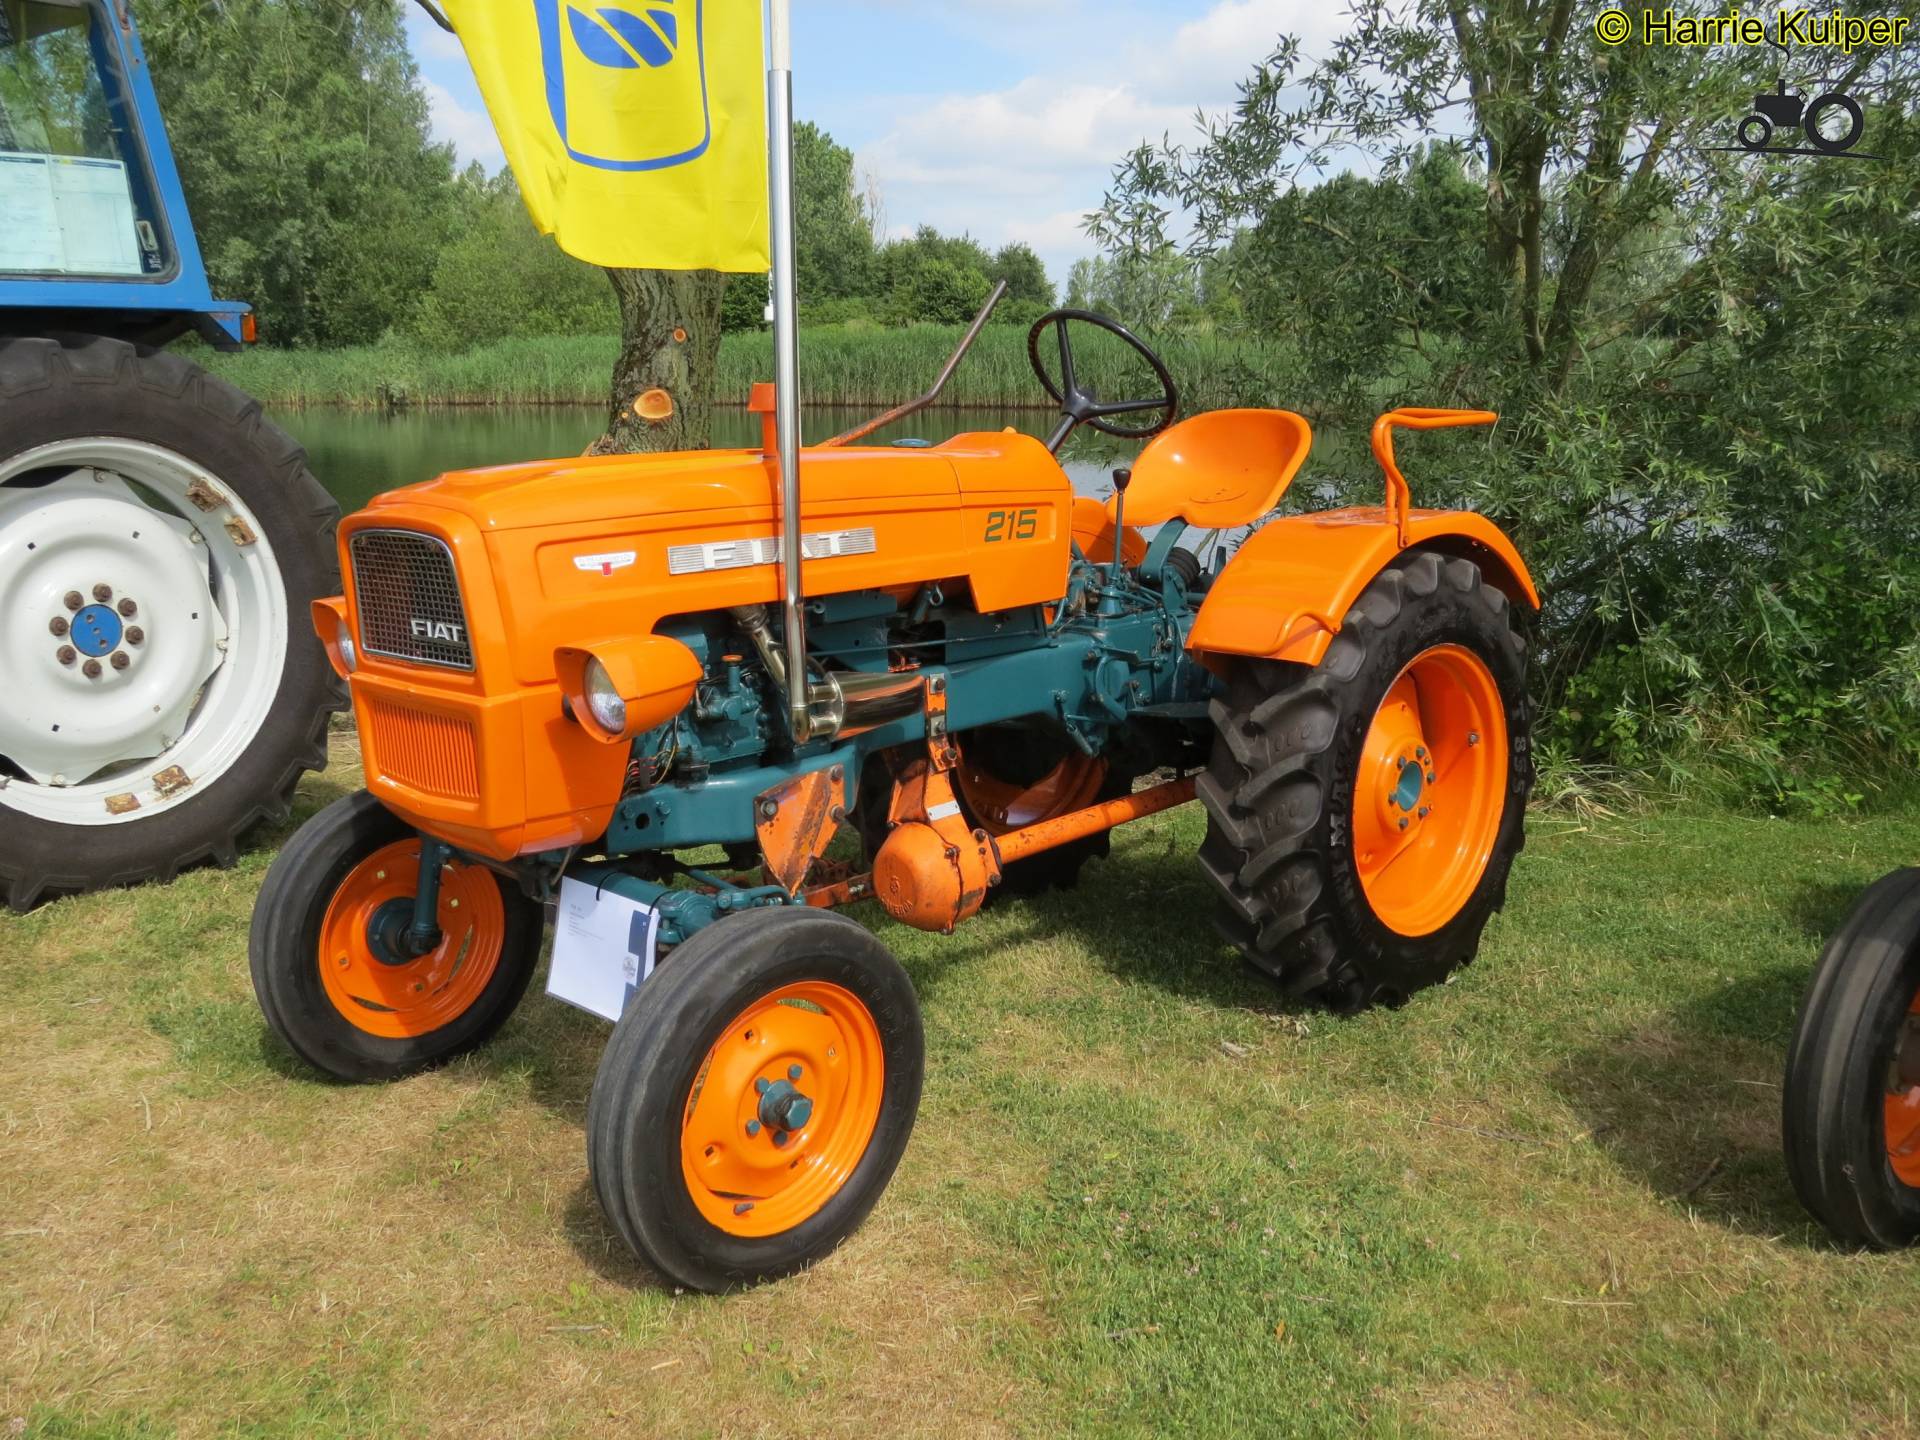 fiat-215-united-kingdom-tractor-picture-1307921